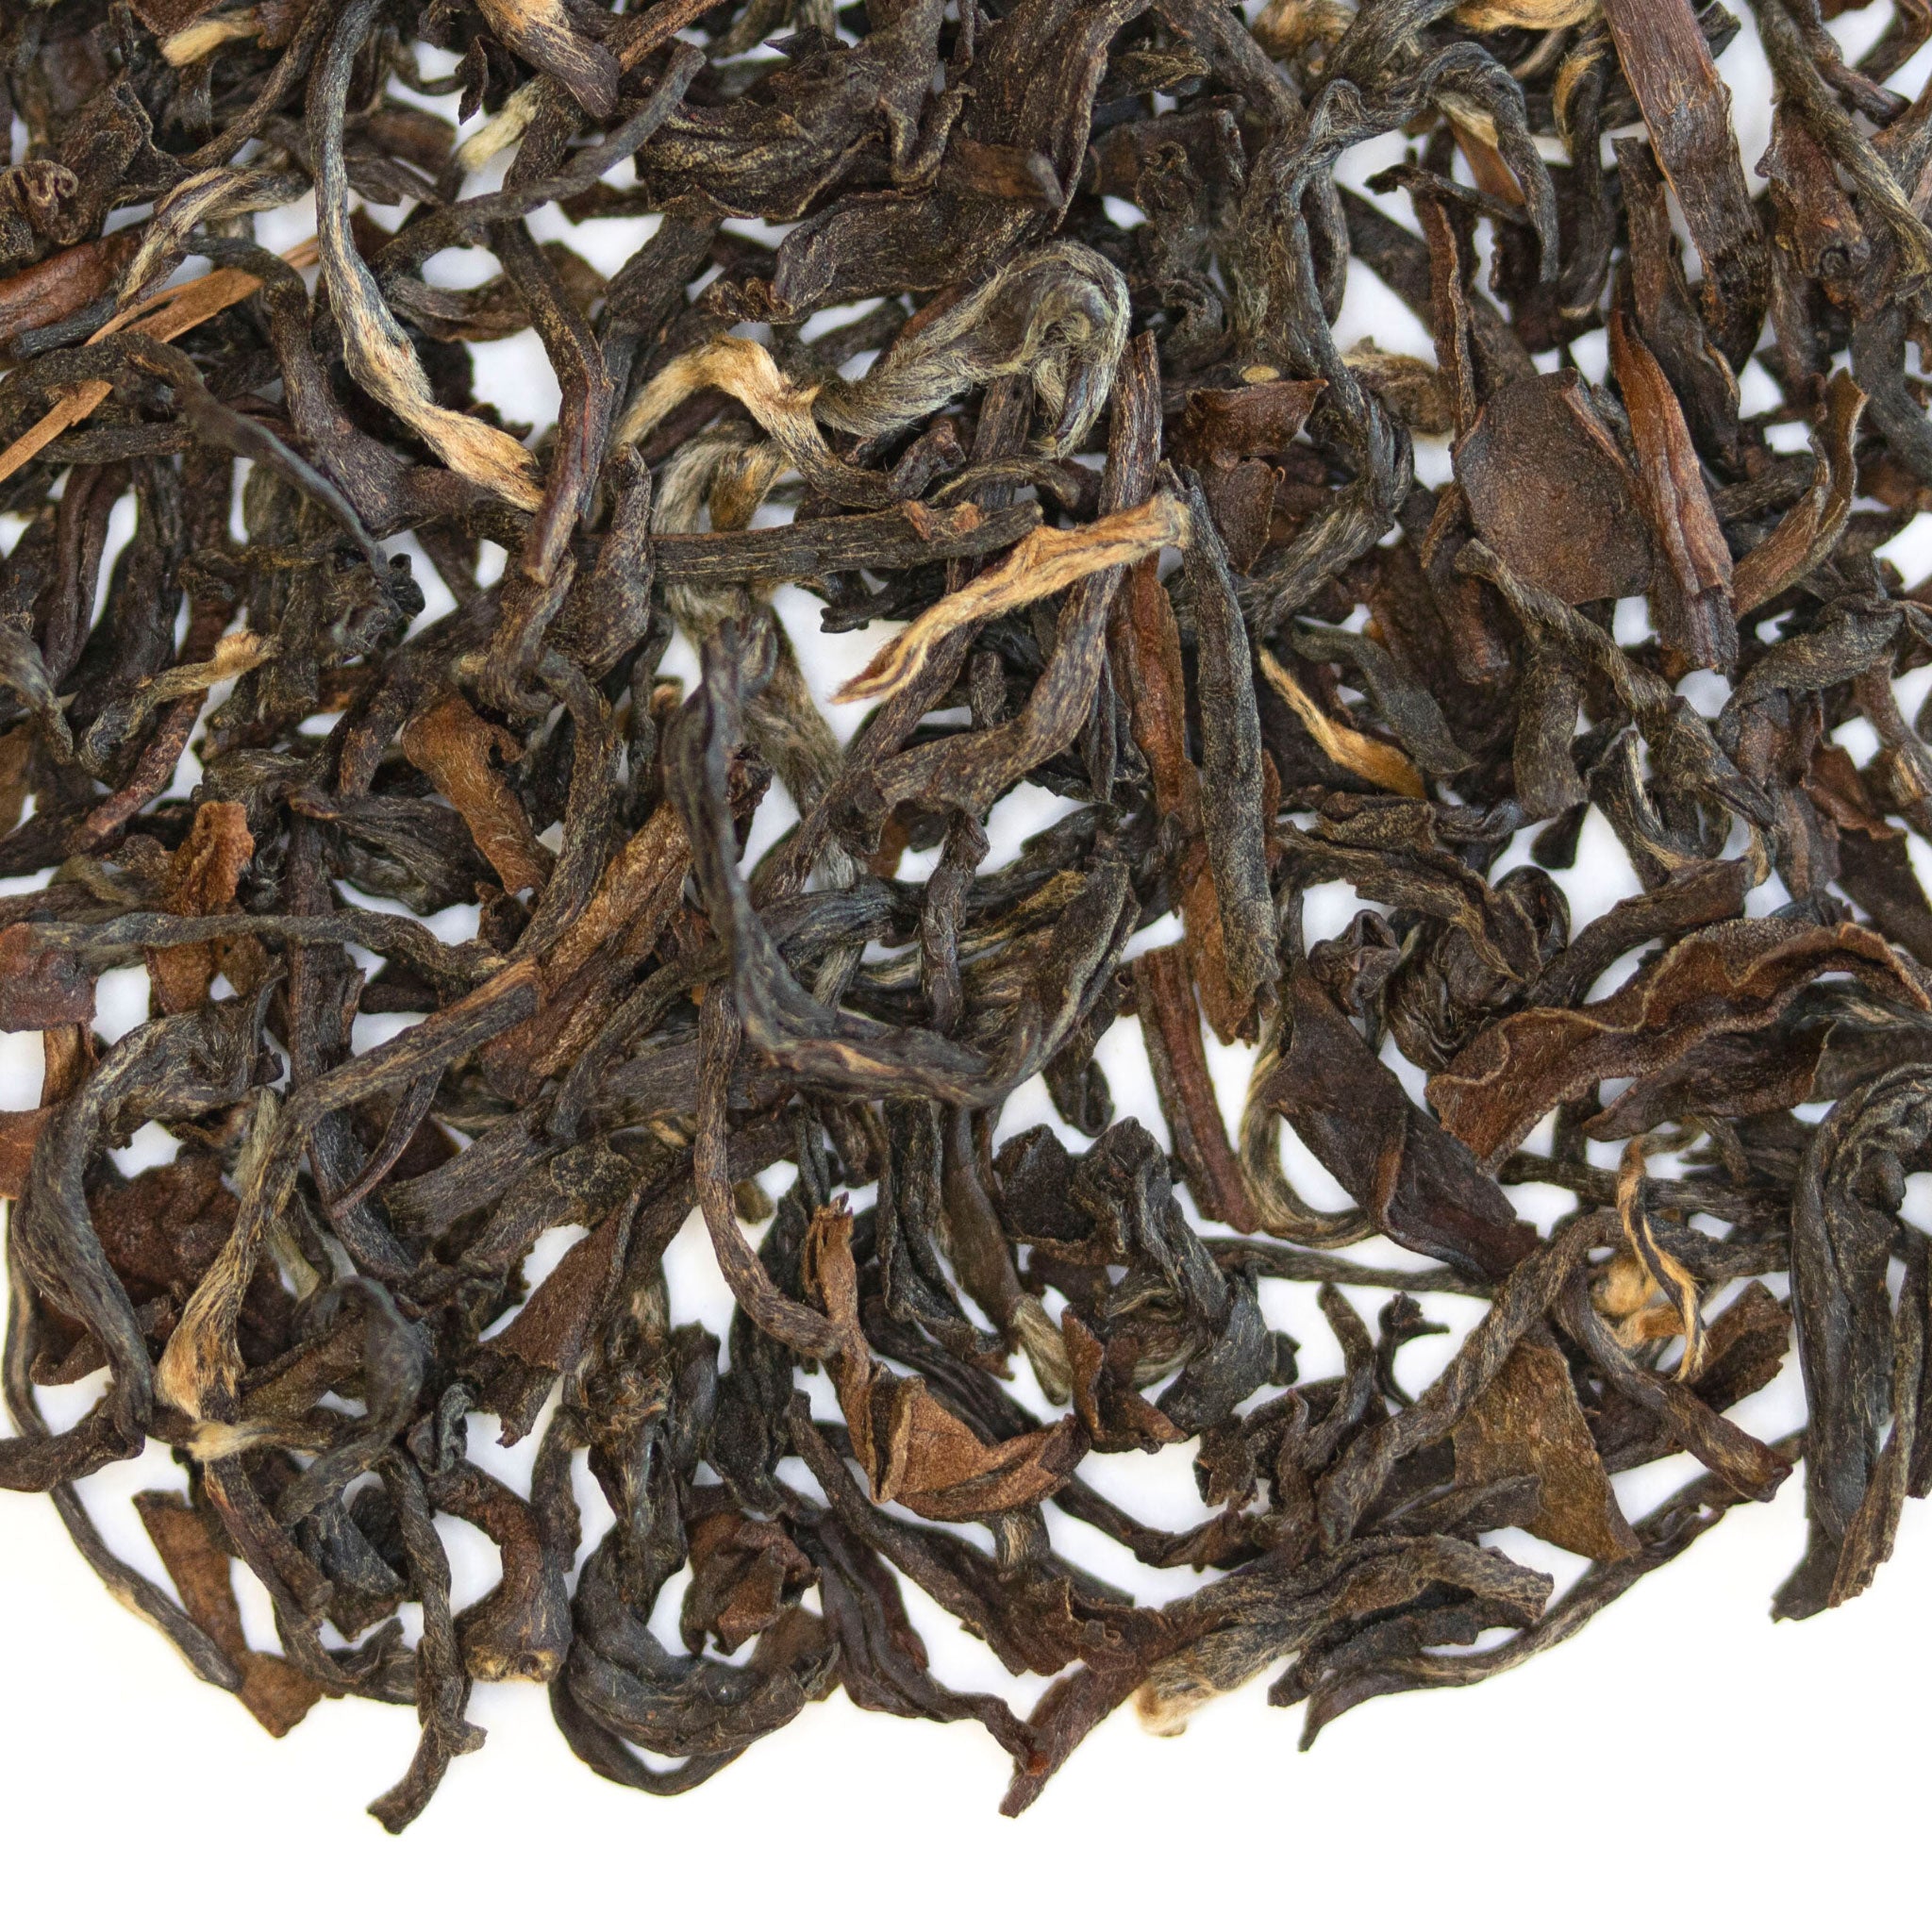 Loose leaf Jacky Winter Darjeeling 2nd Flush Indian black tea